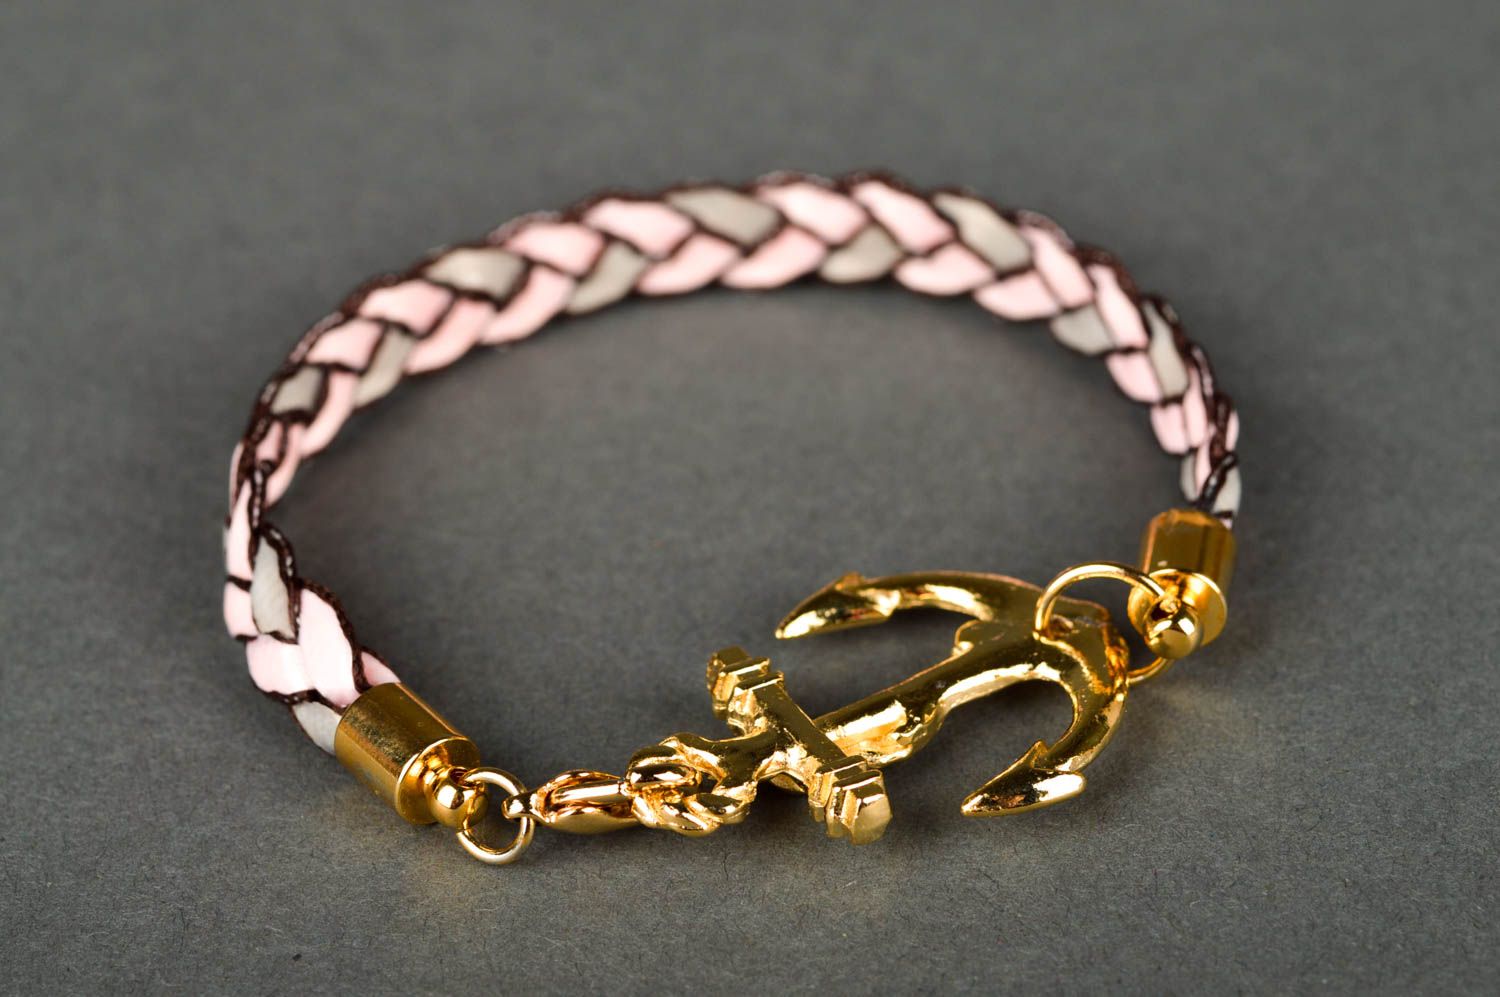 Дизайнерское украшение браслет ручной работы розовый женский браслет из лент фото 2